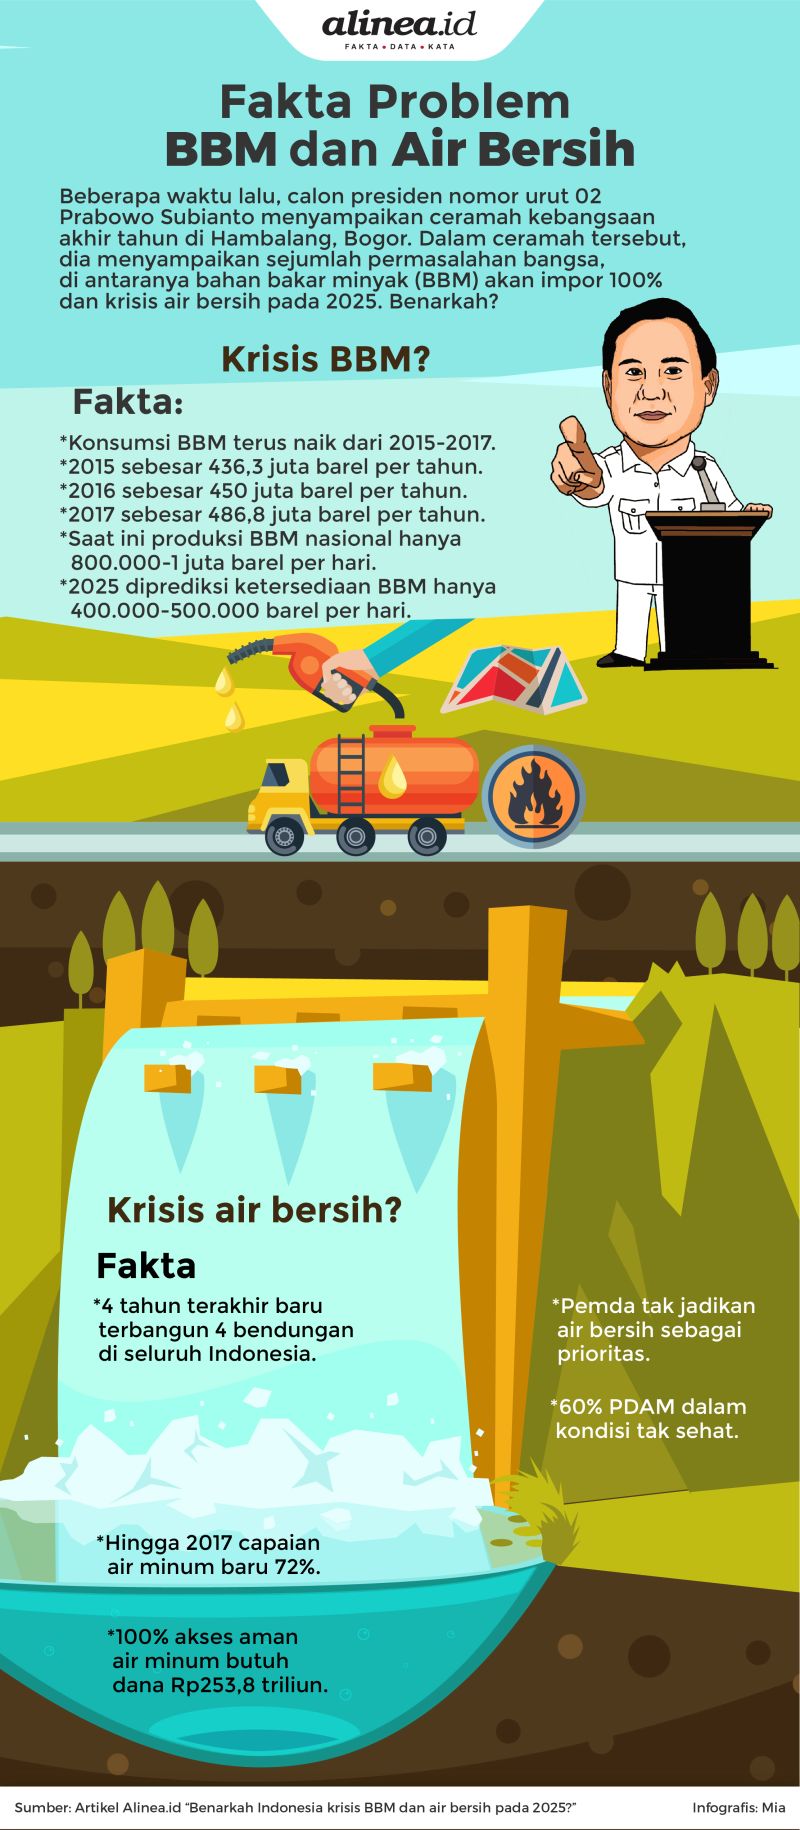 Fakta problem BBM dan air bersih.Alinea.id